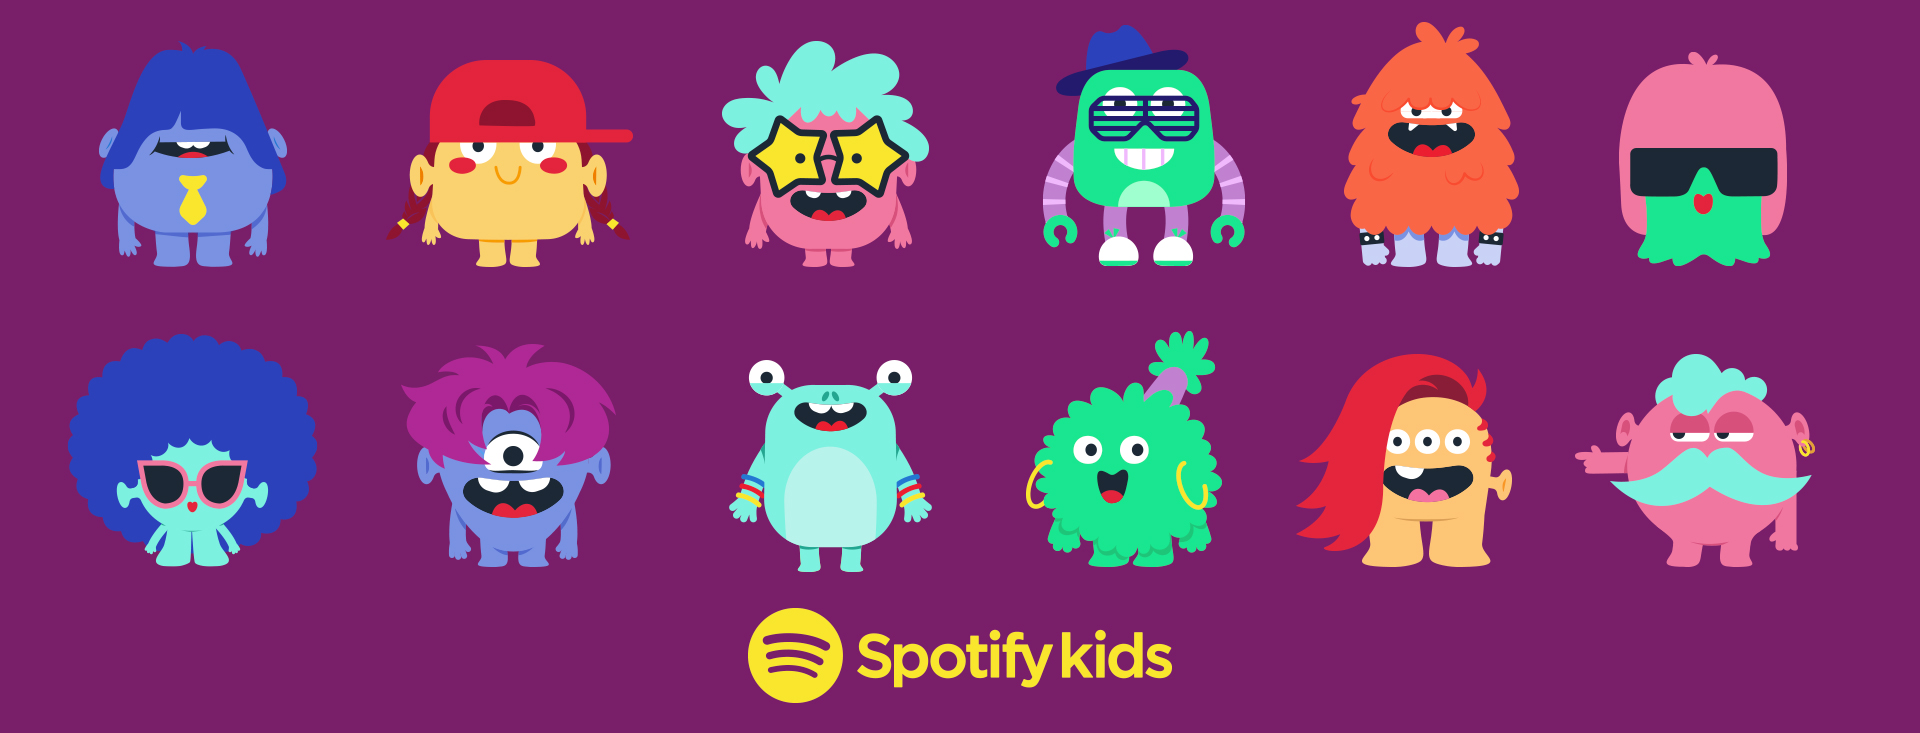 Spotify anuncia Spotify Kids especialmente para crianças 1